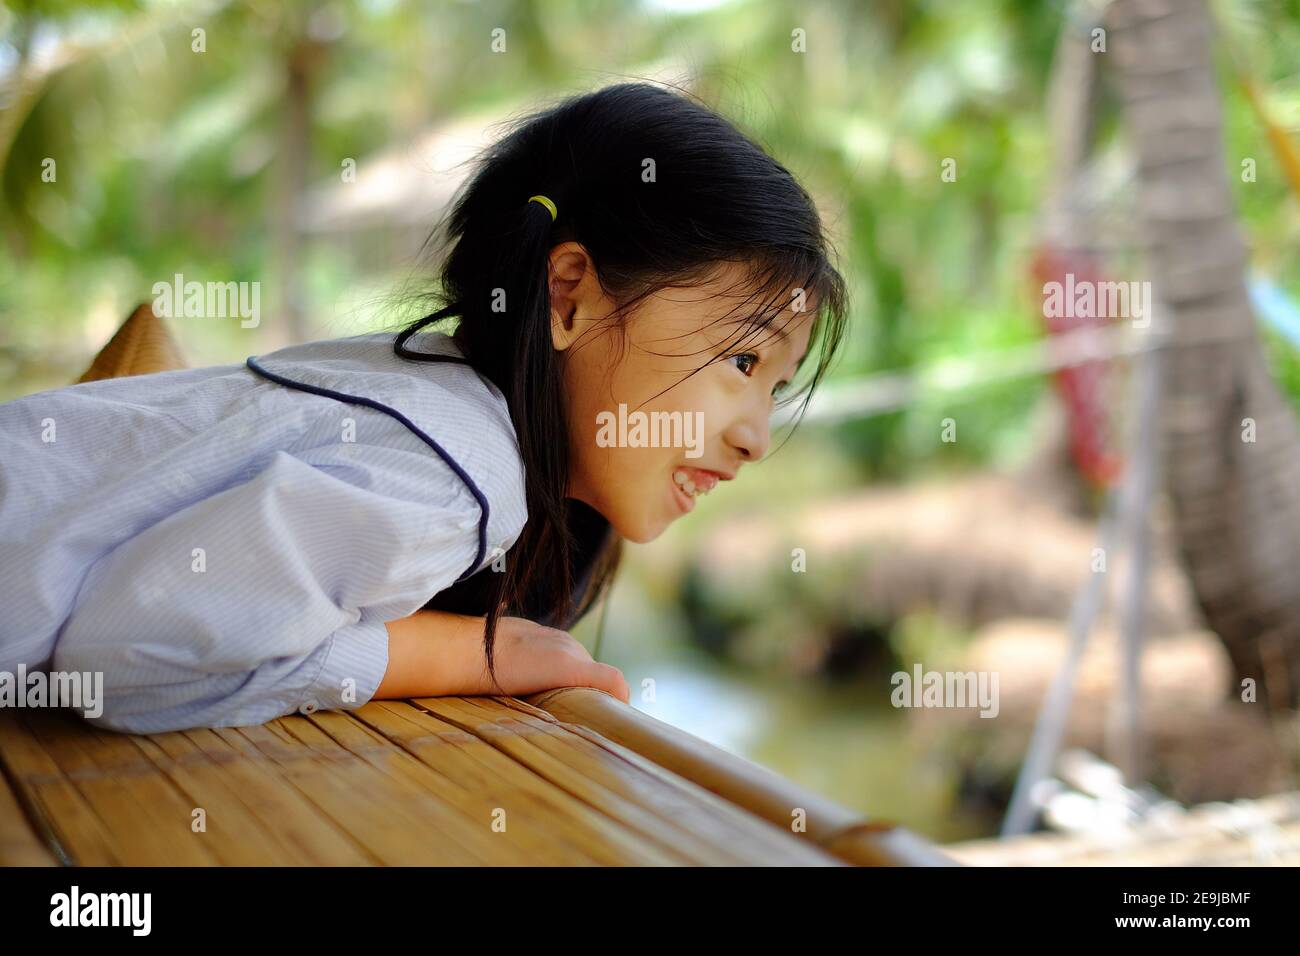 Une jolie jeune fille asiatique penchée sur le bord d'une balustrade, regardant vers le bas, visite, se sentant heureuse et souriante. Banque D'Images